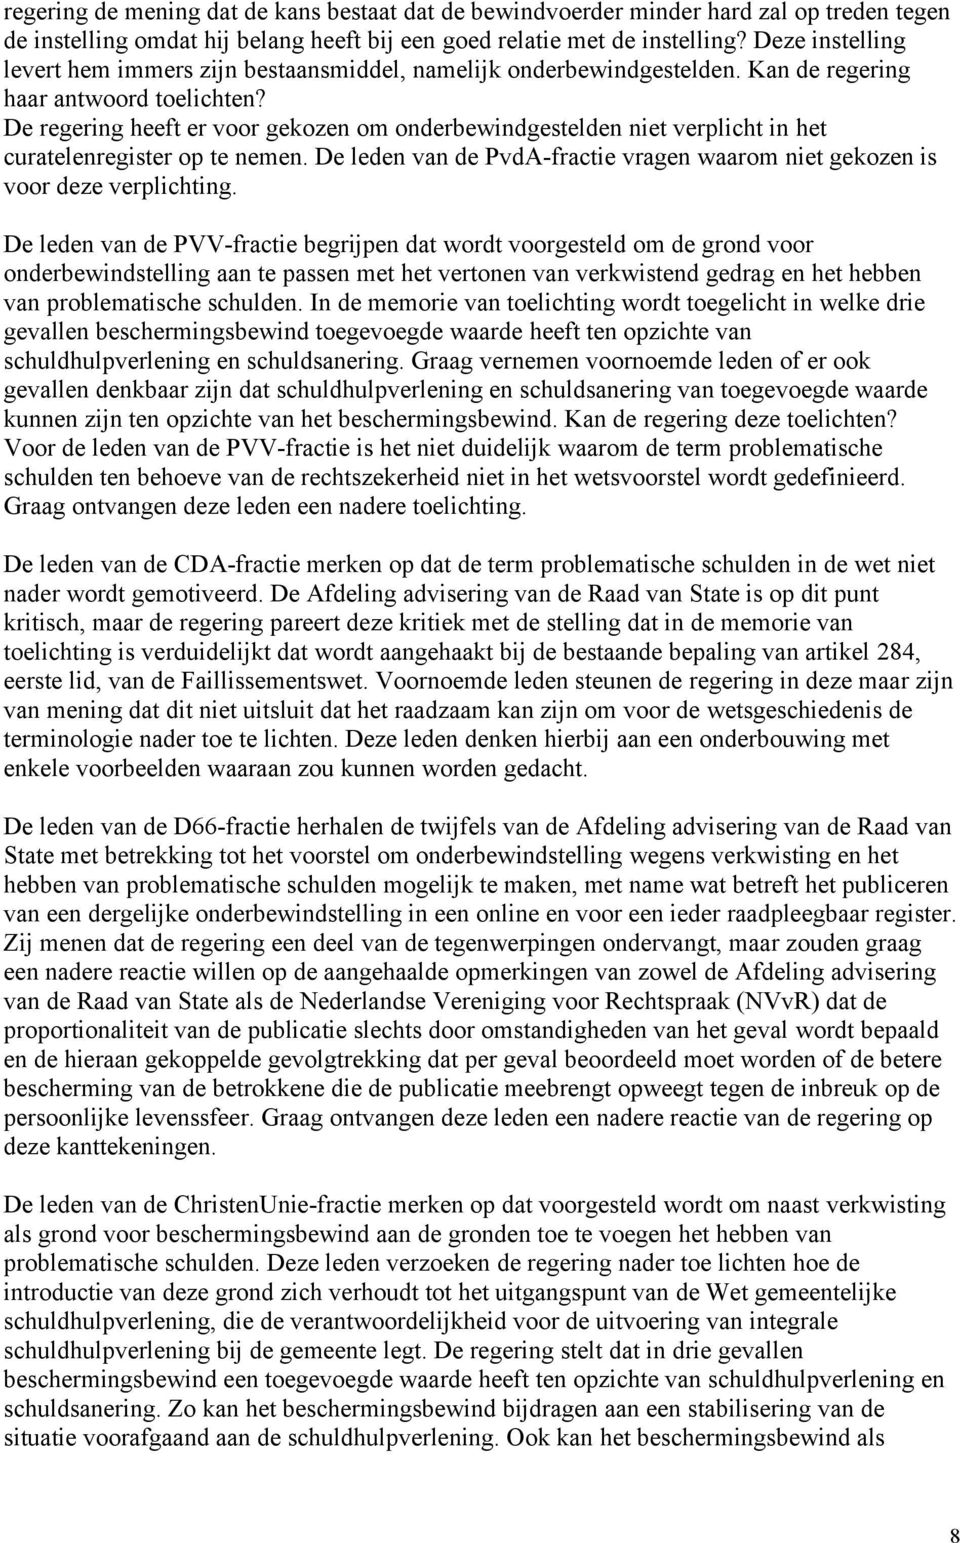 De regering heeft er voor gekozen om onderbewindgestelden niet verplicht in het curatelenregister op te nemen. De leden van de PvdA-fractie vragen waarom niet gekozen is voor deze verplichting.